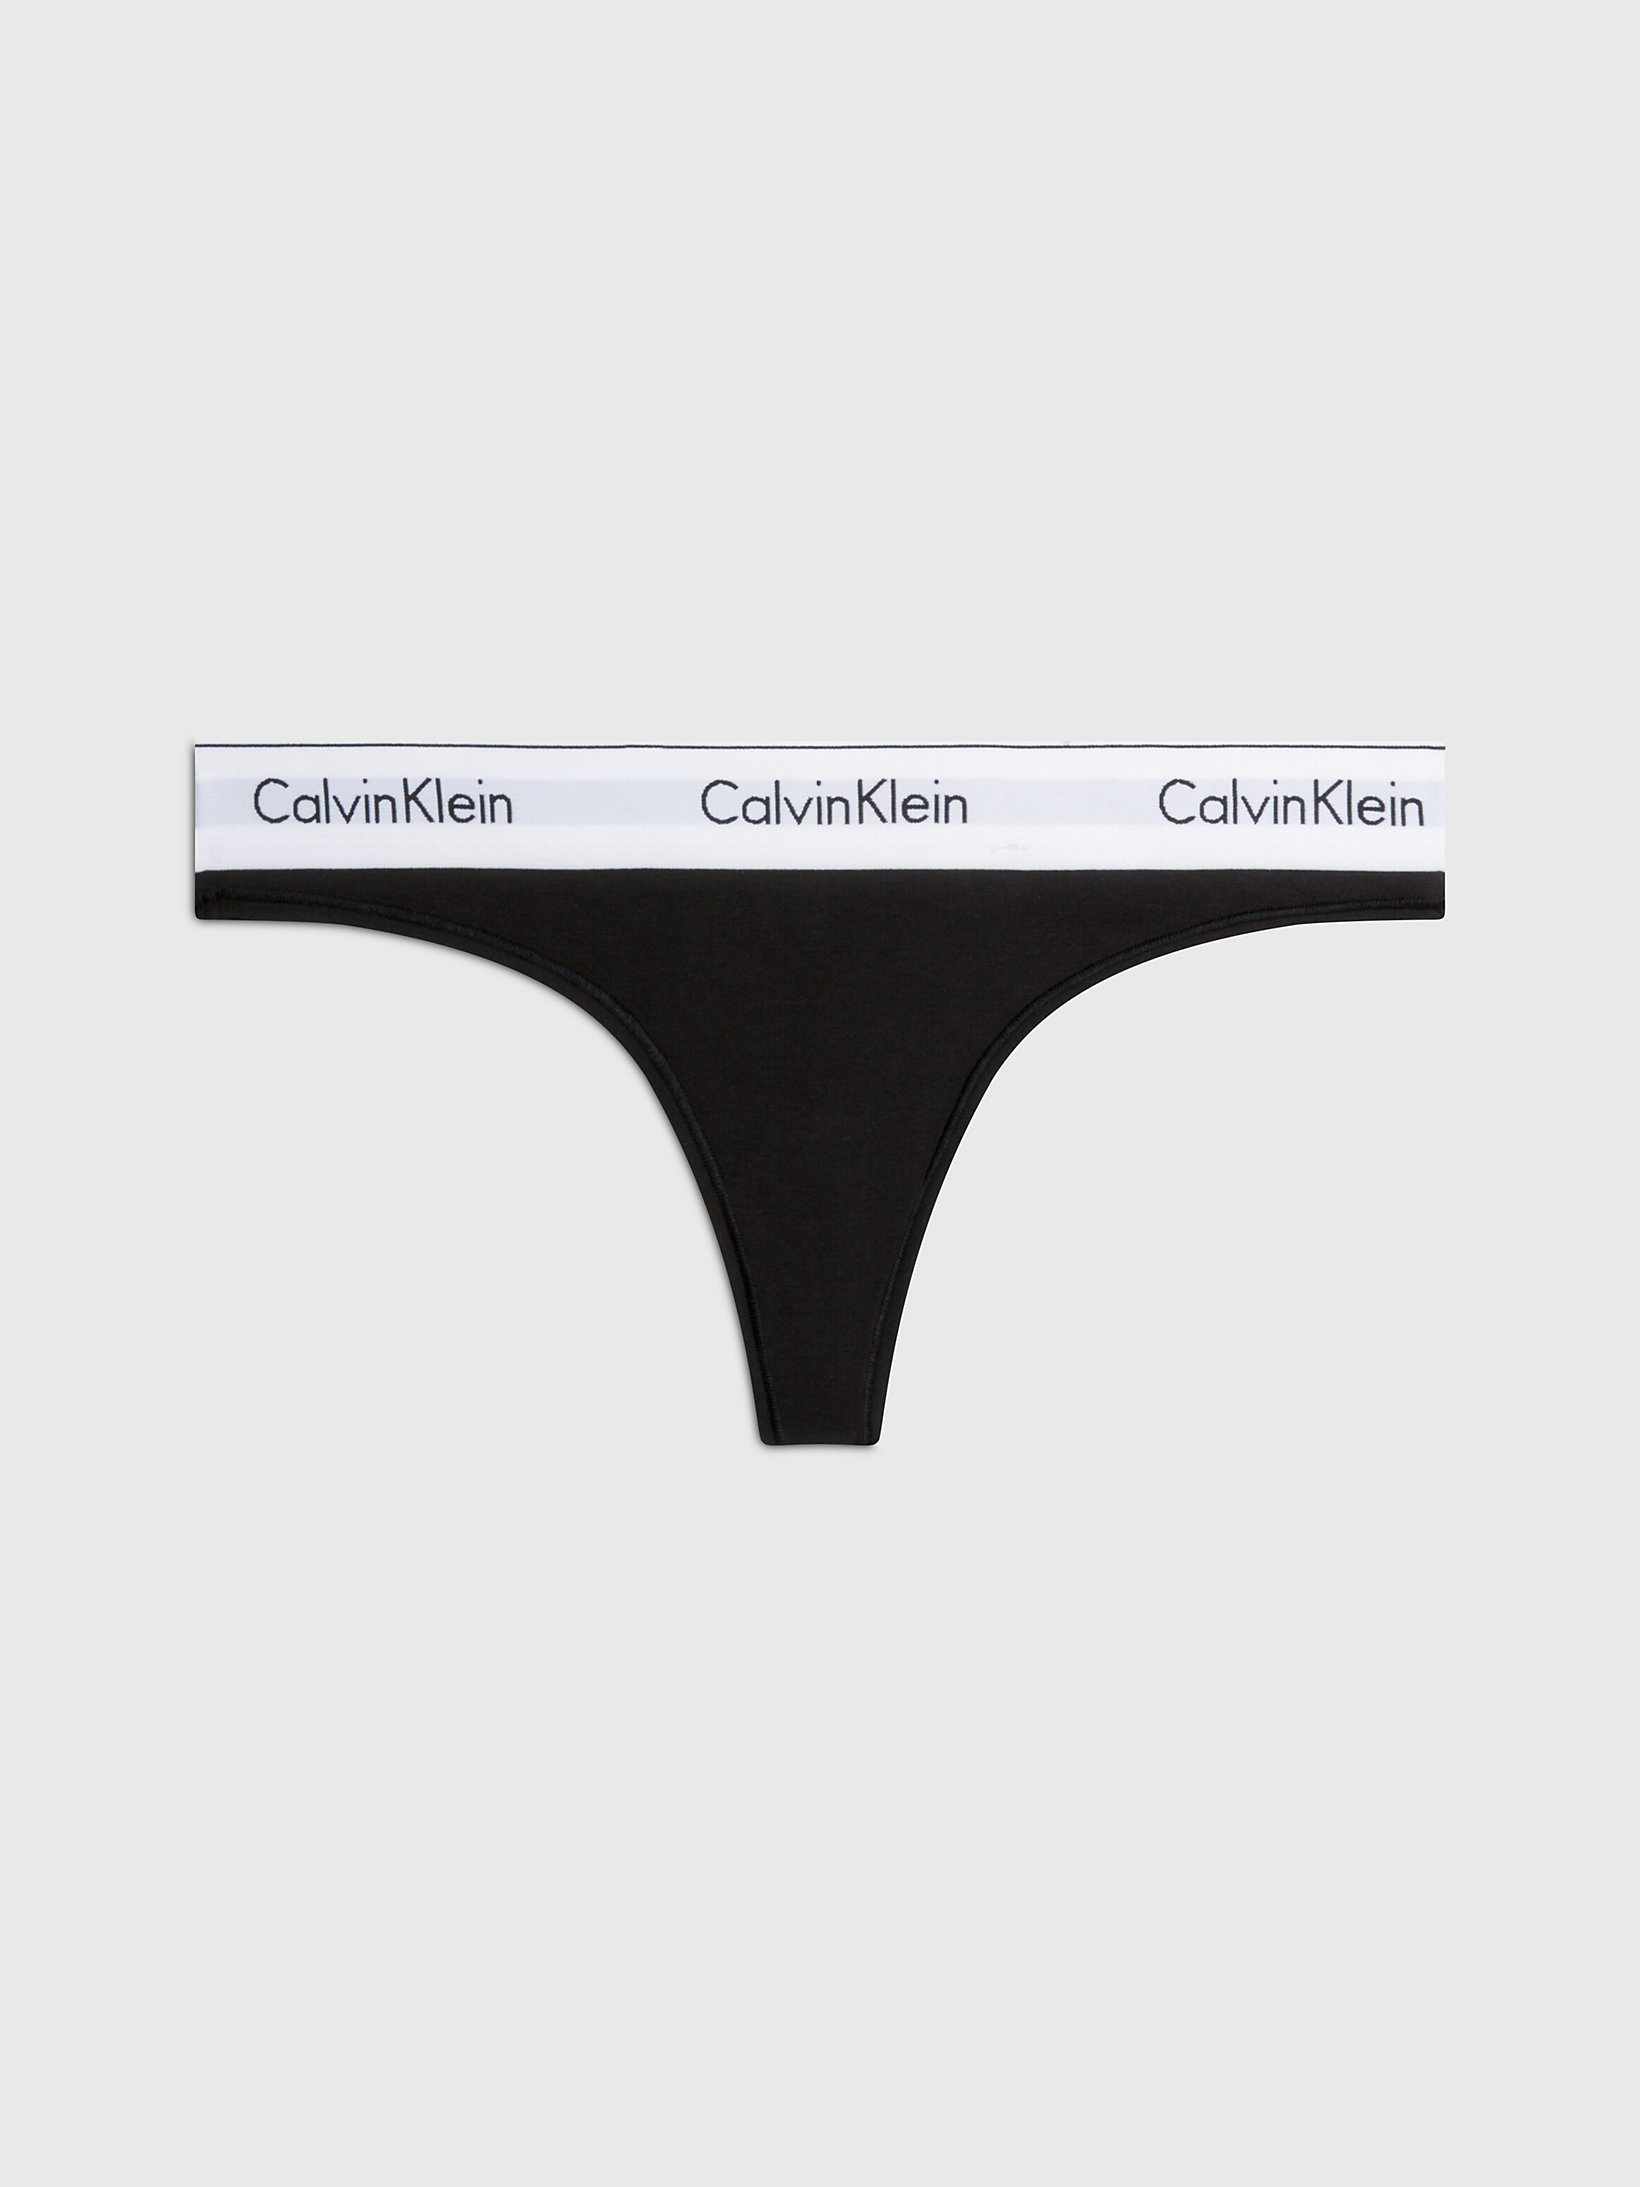 String - Modern Cotton > Black > undefined femmes > Calvin Klein